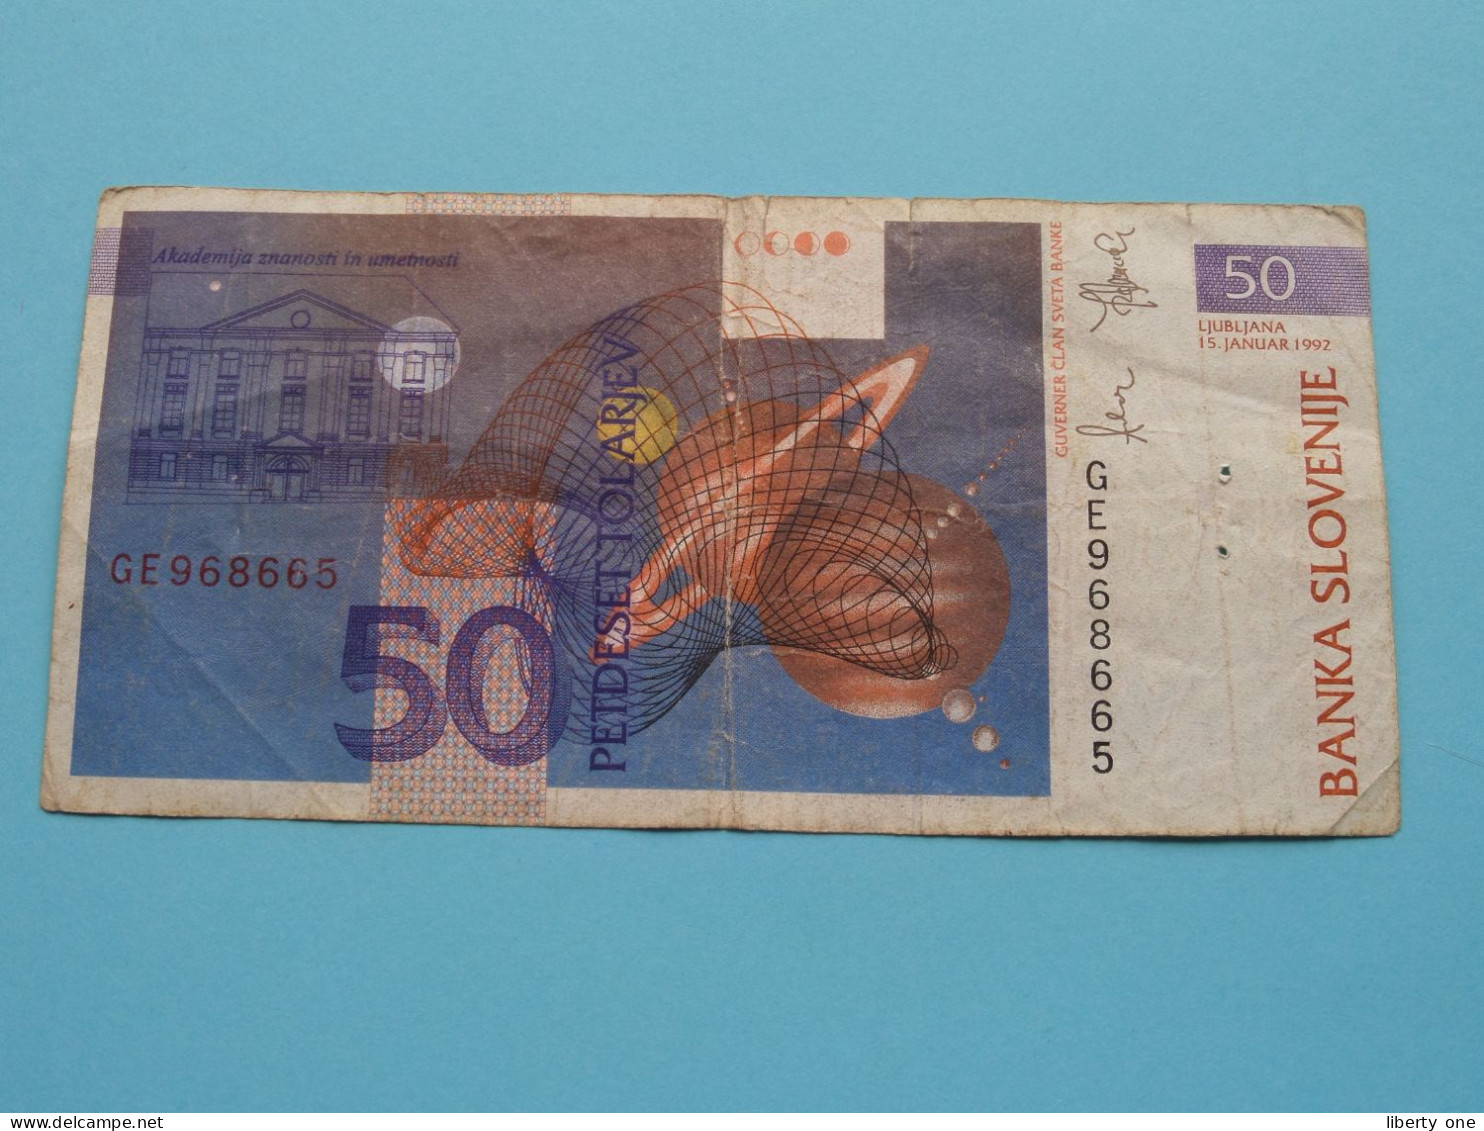 50 Tolarjev ( GE968665 ) Banka Slovenije - 1992( For Grade See SCAN ) Circulated ! - Slovénie